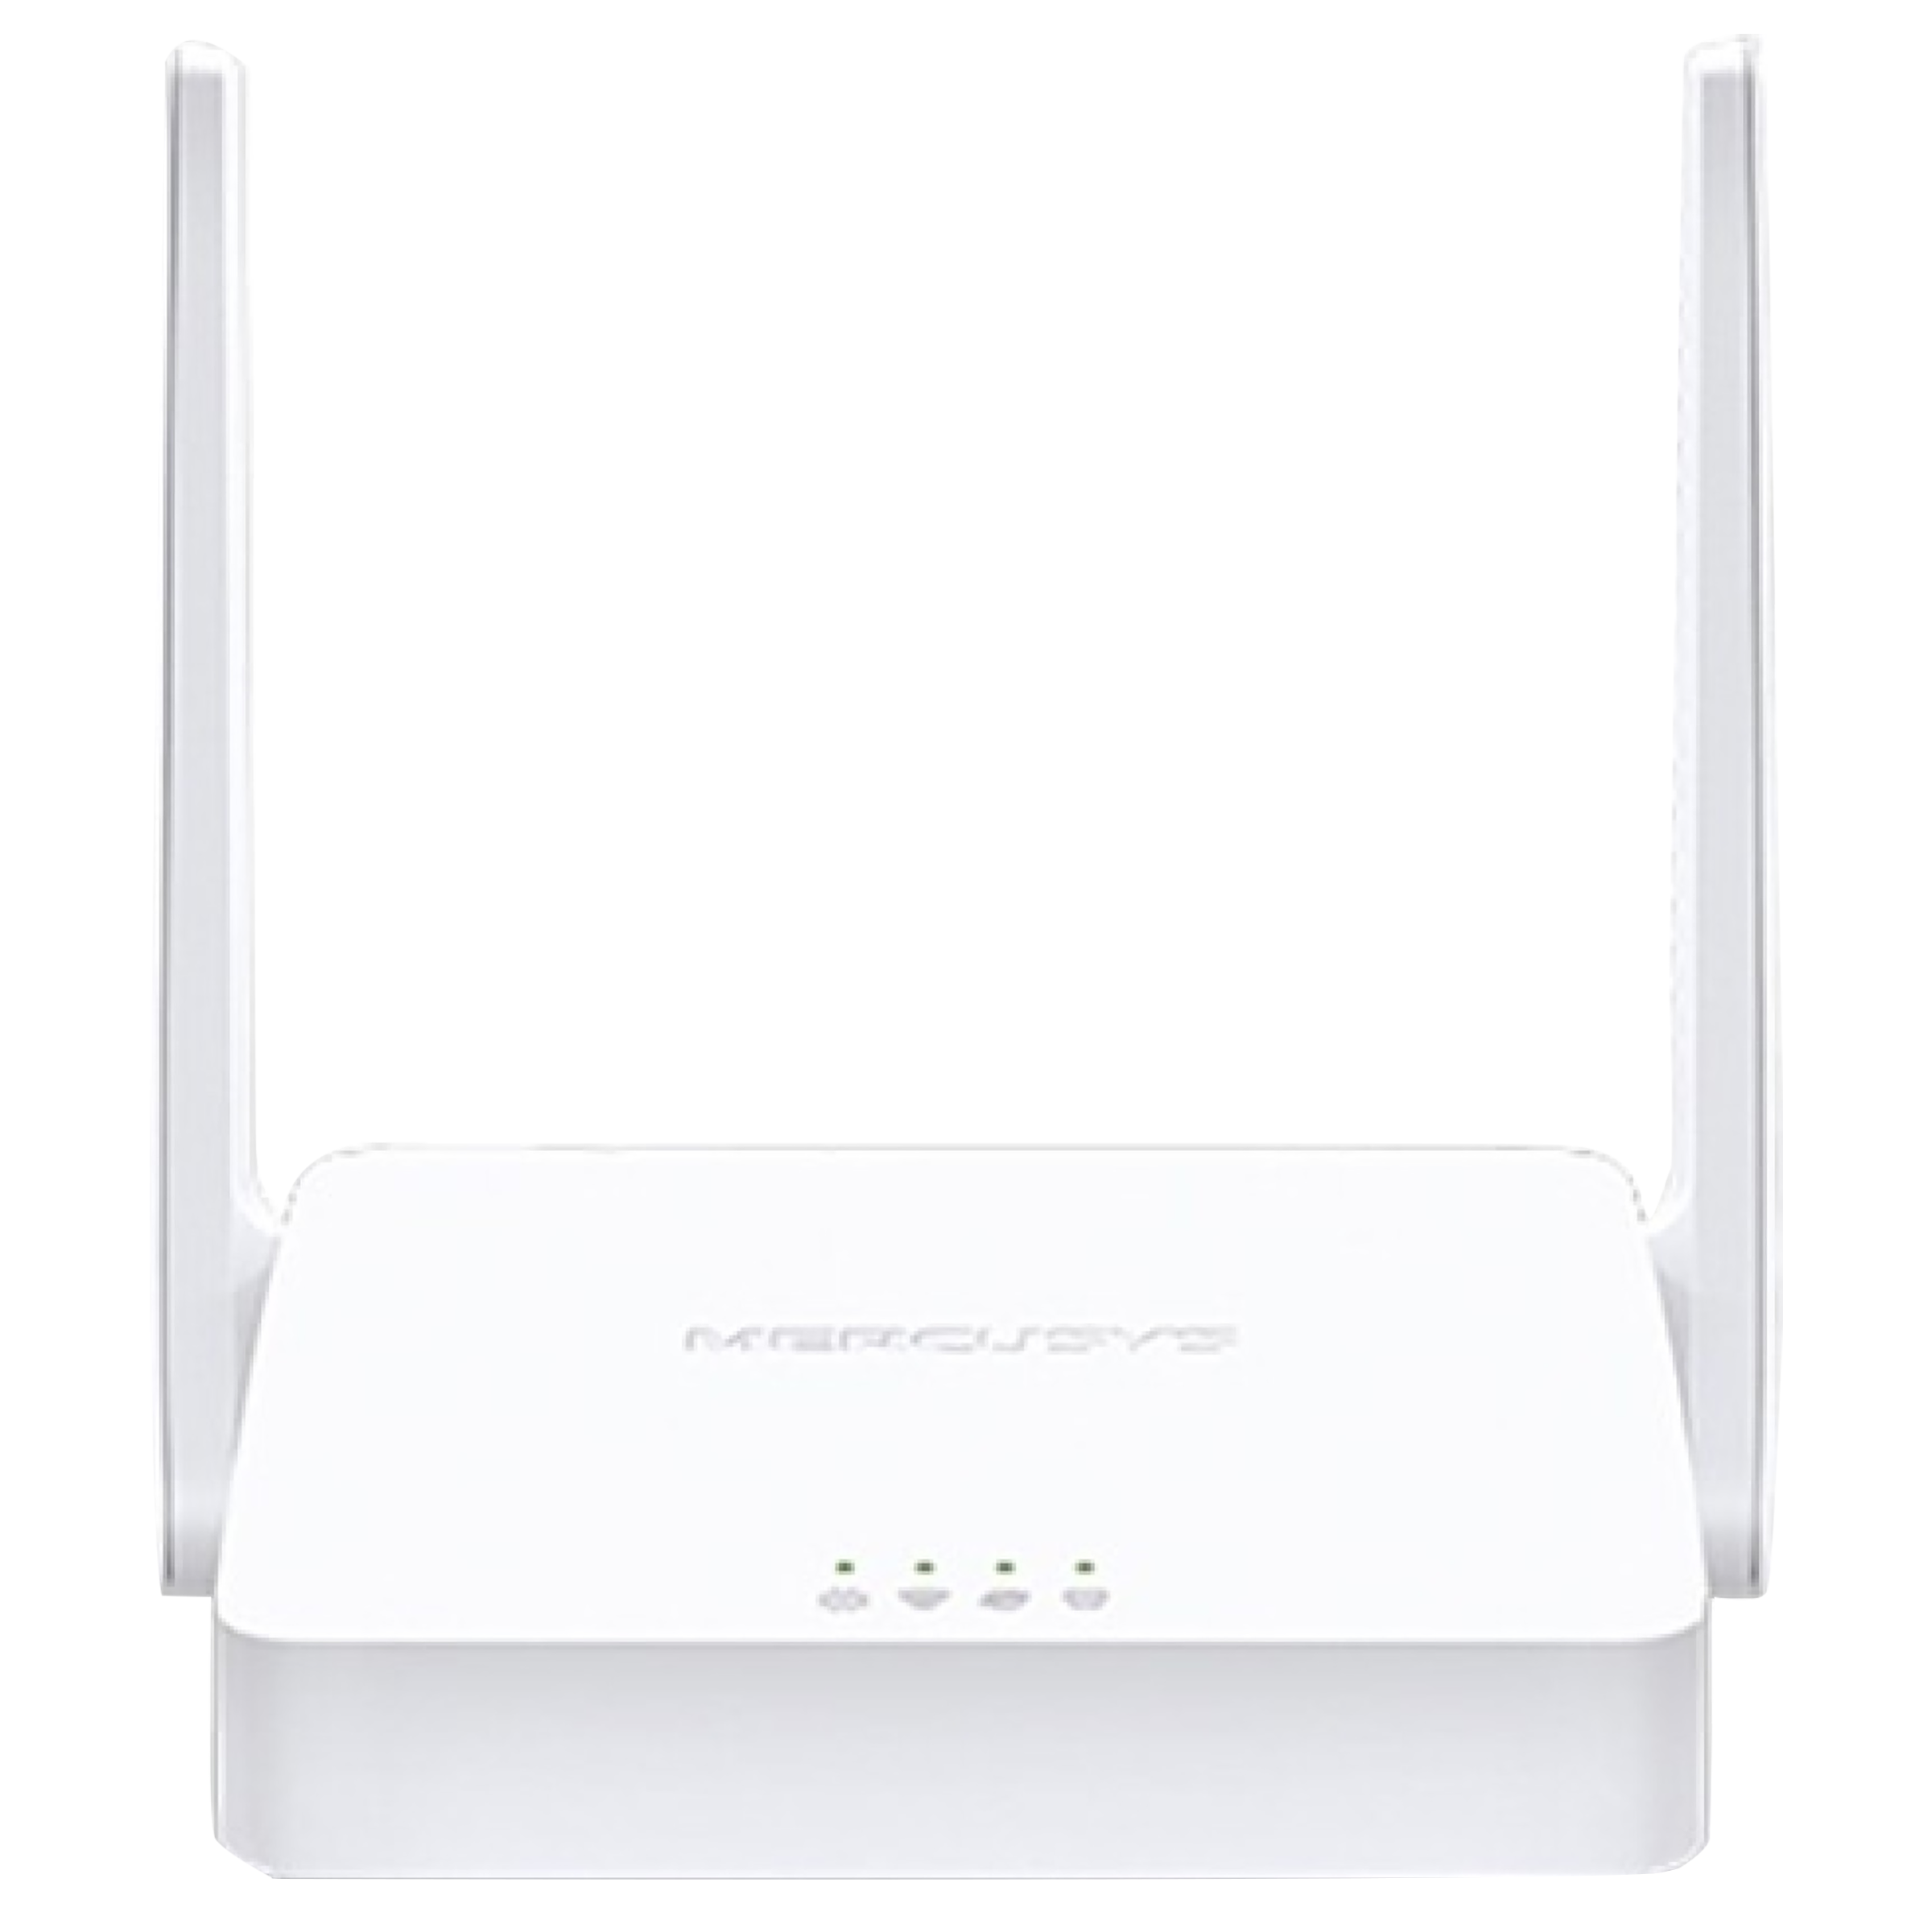 Mercusys MW301R-M 300 MbpsWiFi Router (2 Antennas, 2 LAN Ports, White)_1